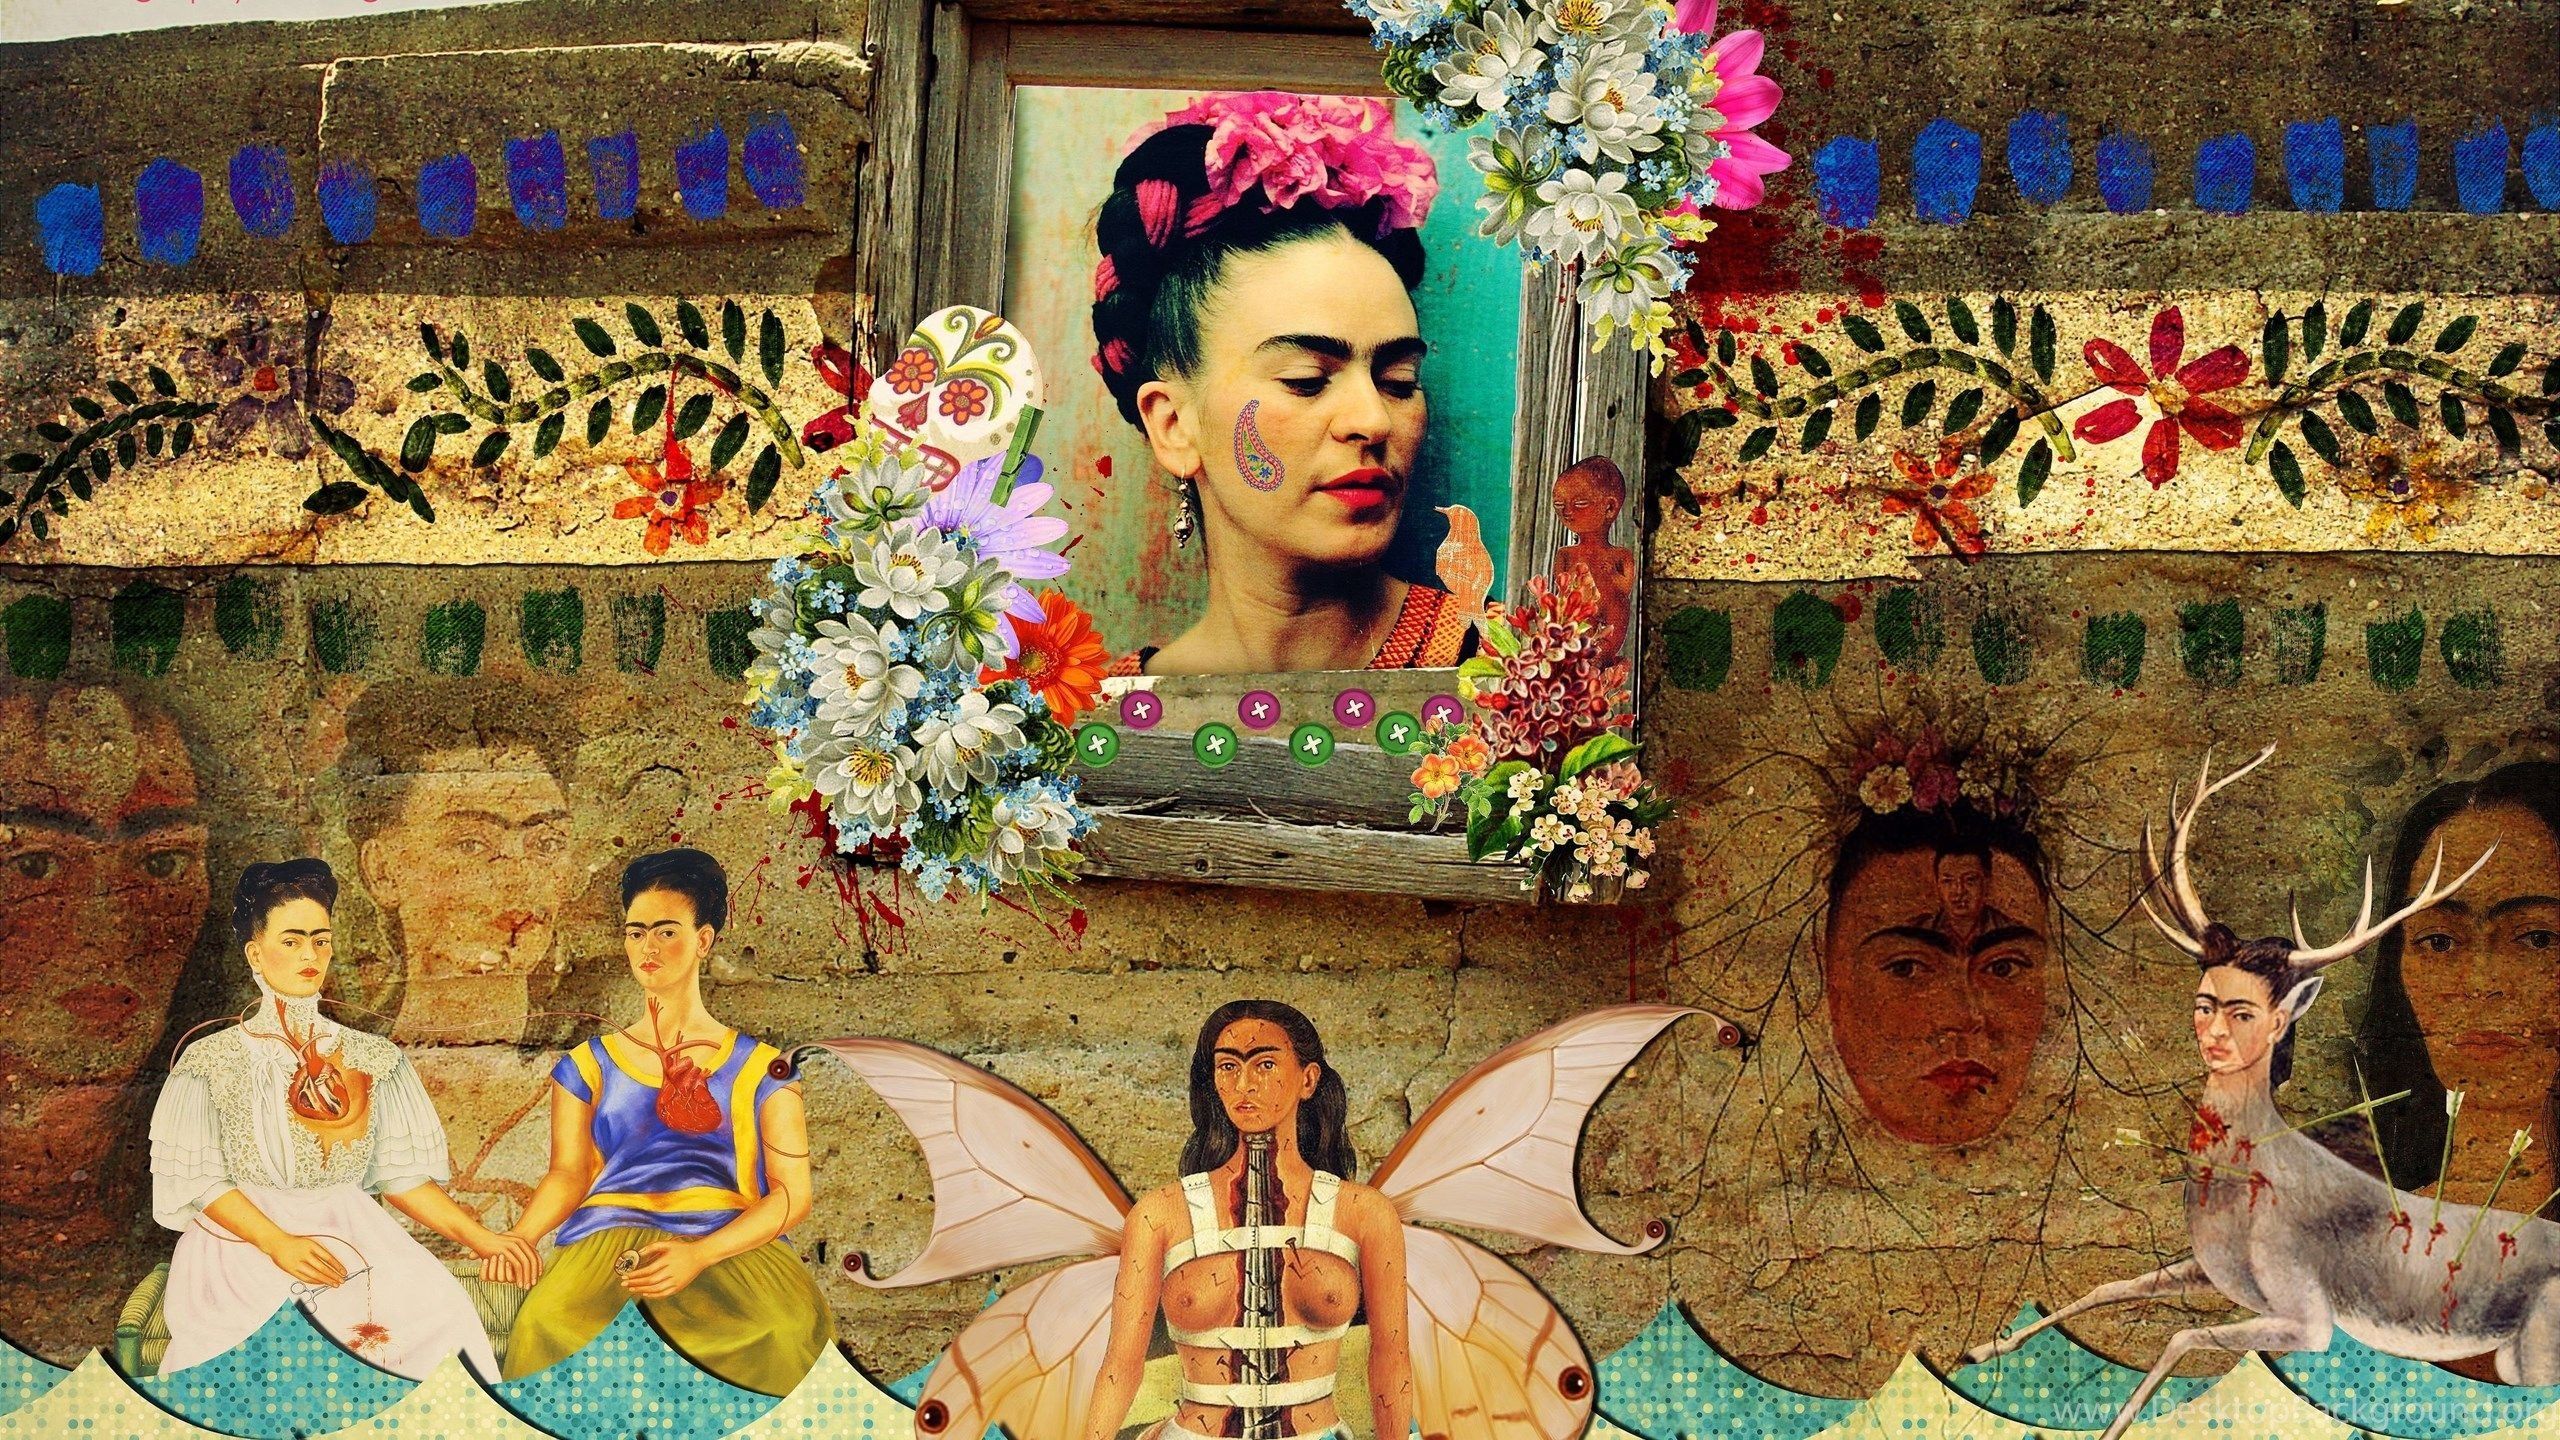 Frida Kahlo Hintergrundbild 2560x1440. Frida Kahlo Paintings Wallpaper Free Frida Kahlo Paintings Background